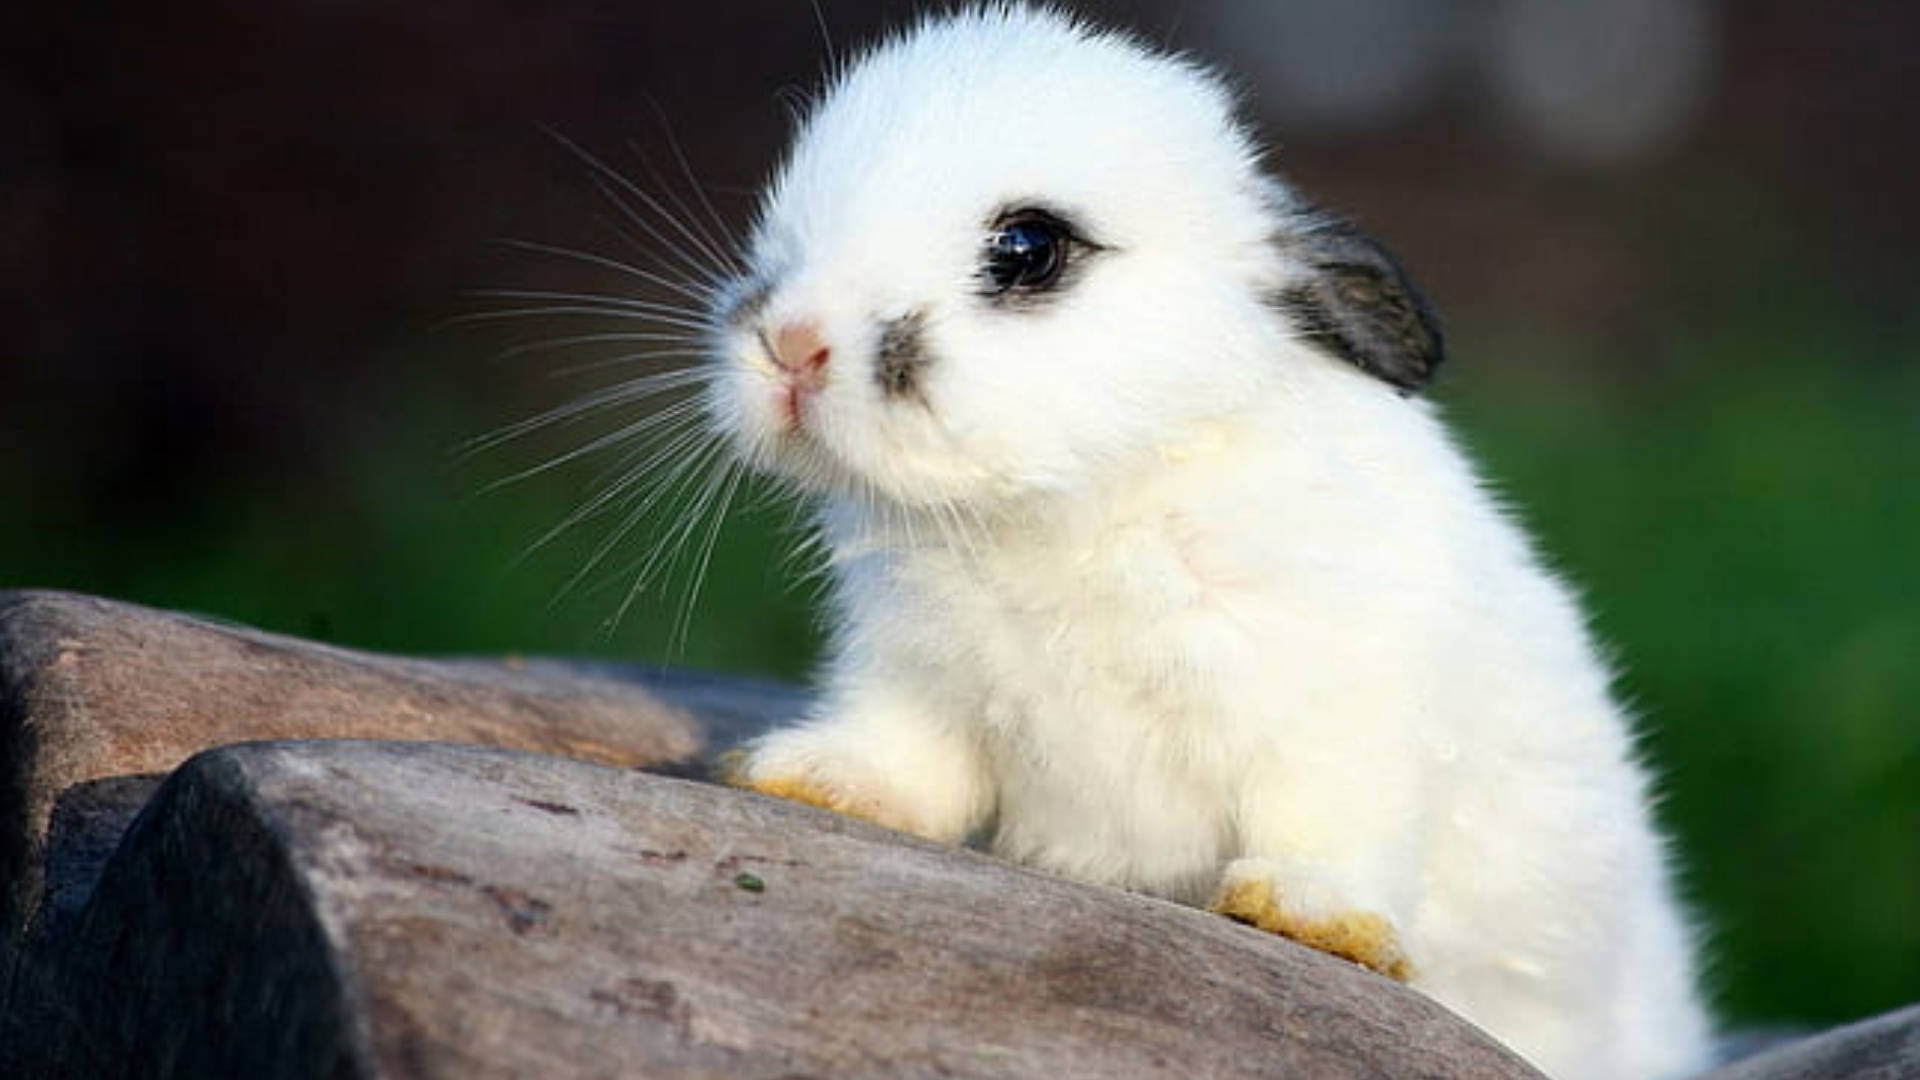 baby white hare